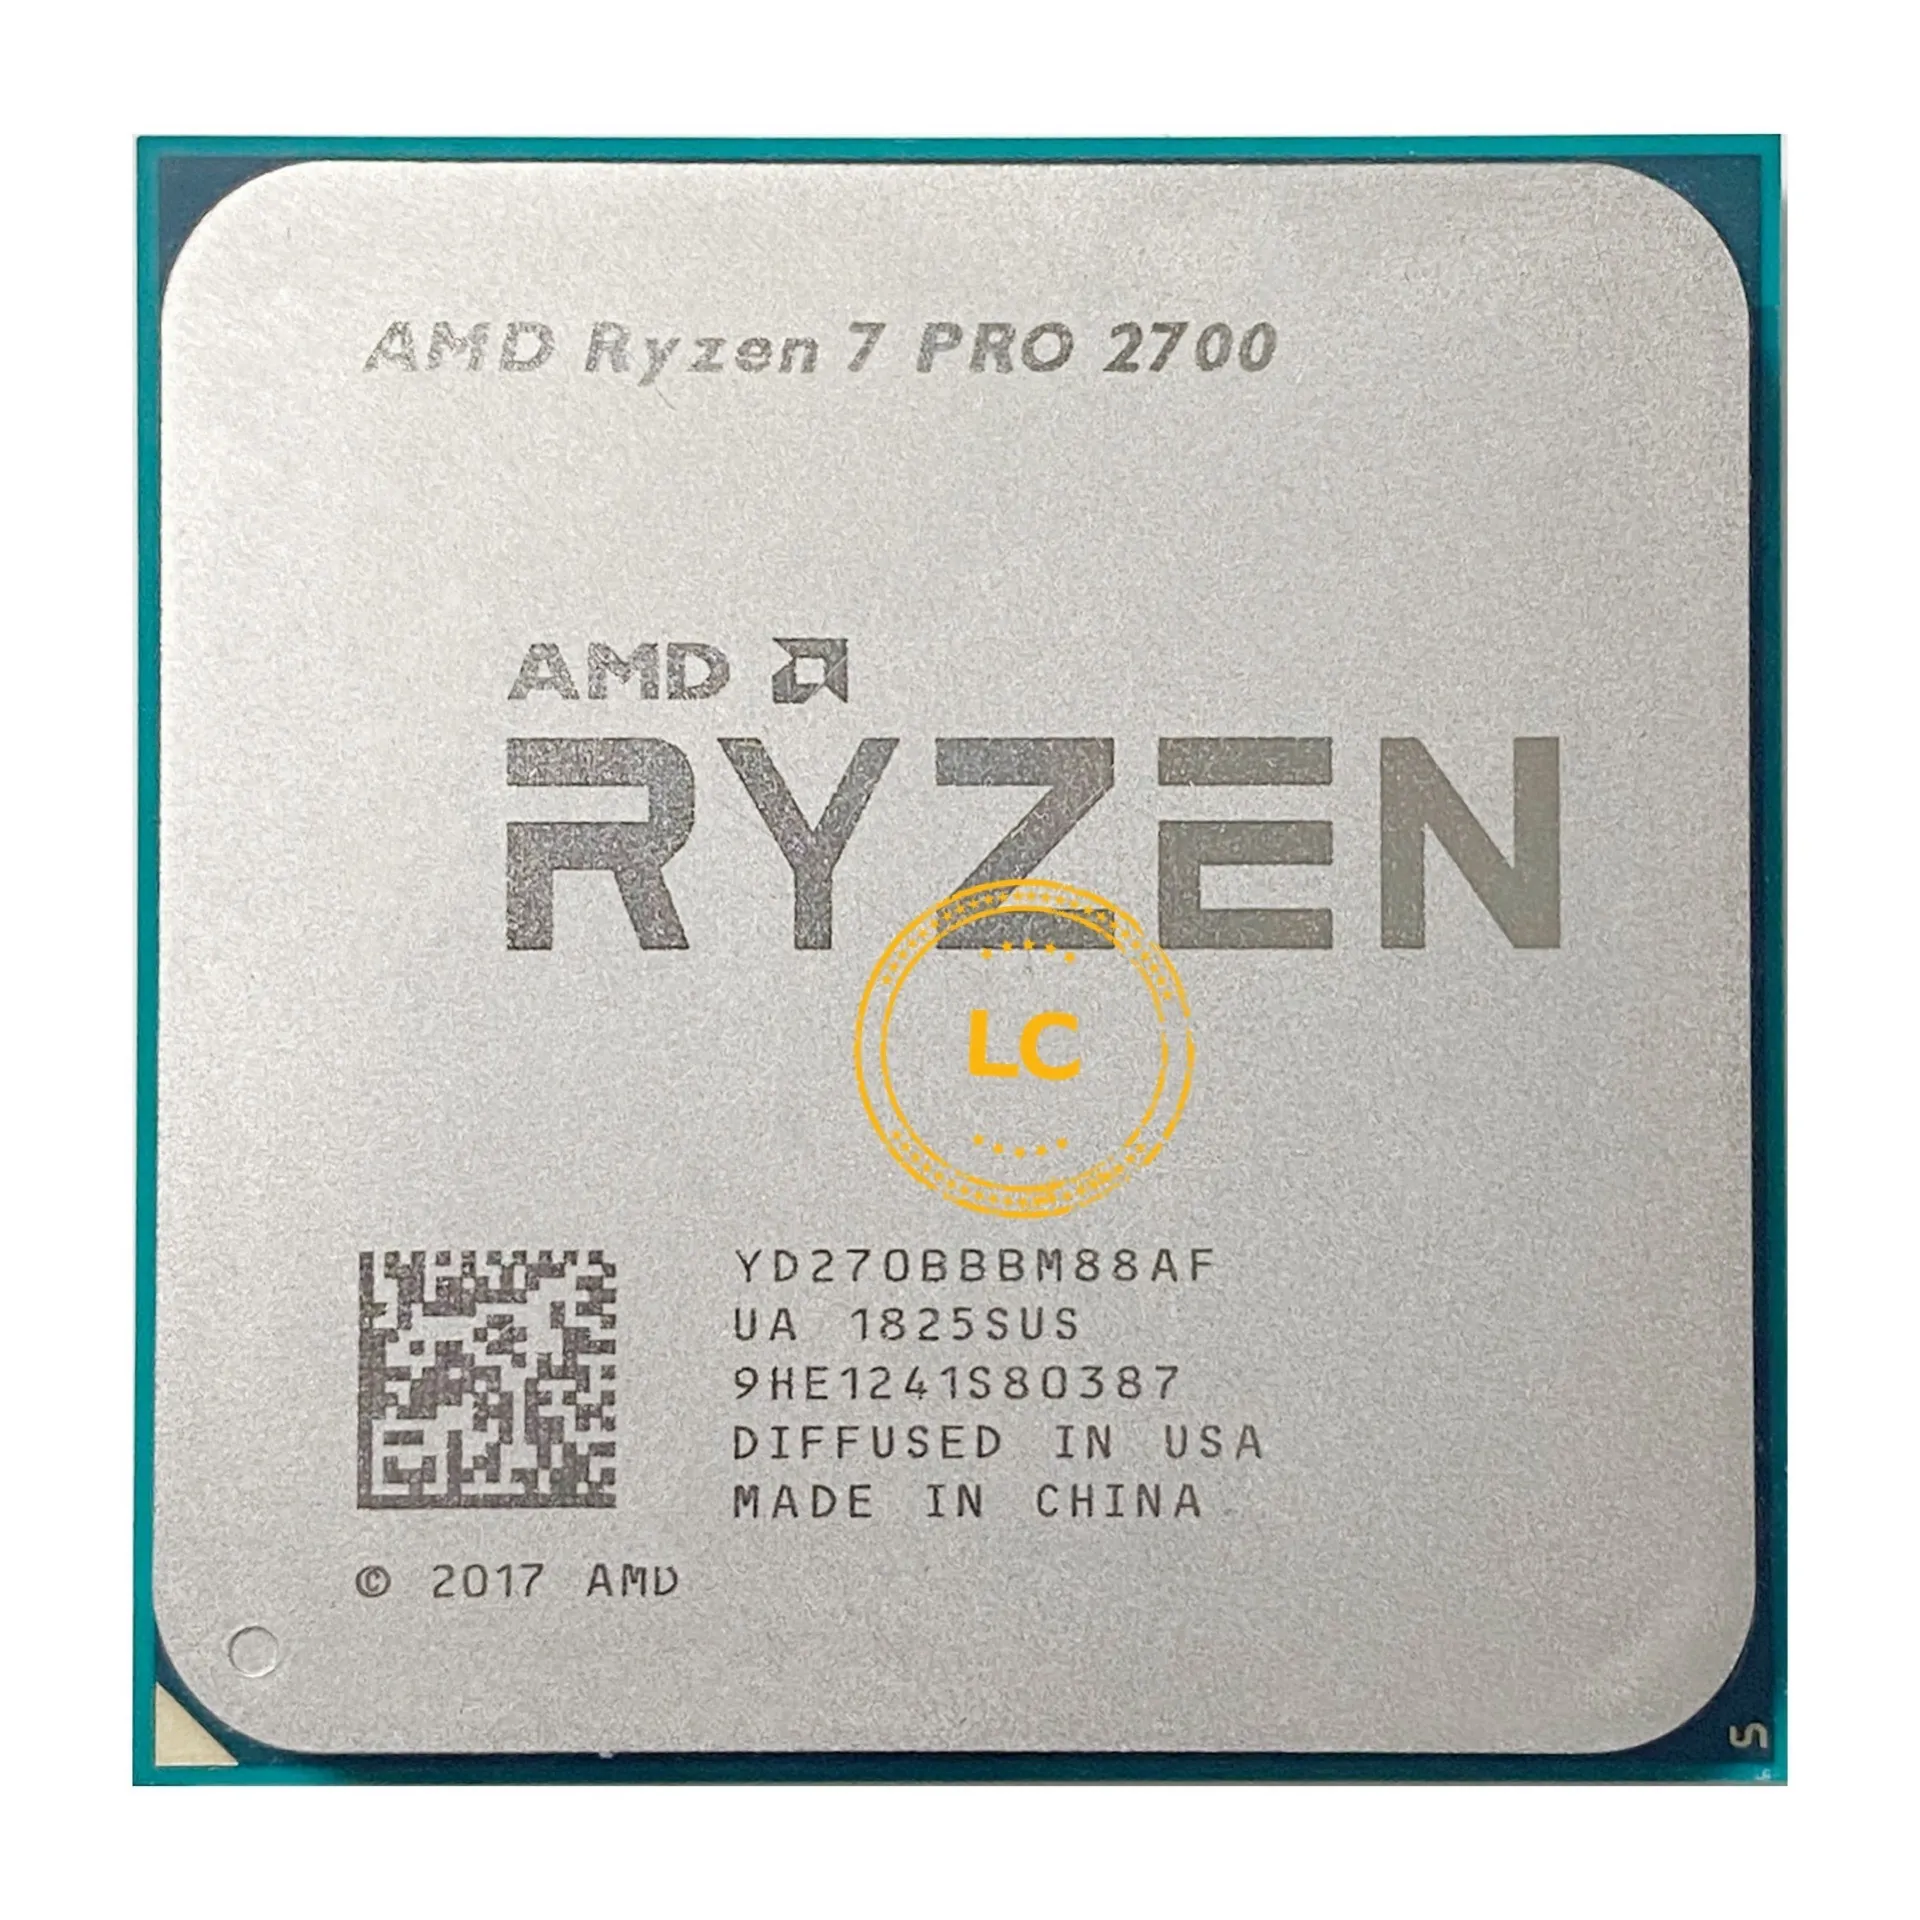 AMD Ryzen Processor 7 Pro 2700 R7 2700 3.2 GHz, 8-Core, 16 Wire, 16m, 65W, Plug YD270BBBM888F AM4 Processori CPU Verifica all'ingrosso prima della spedizione